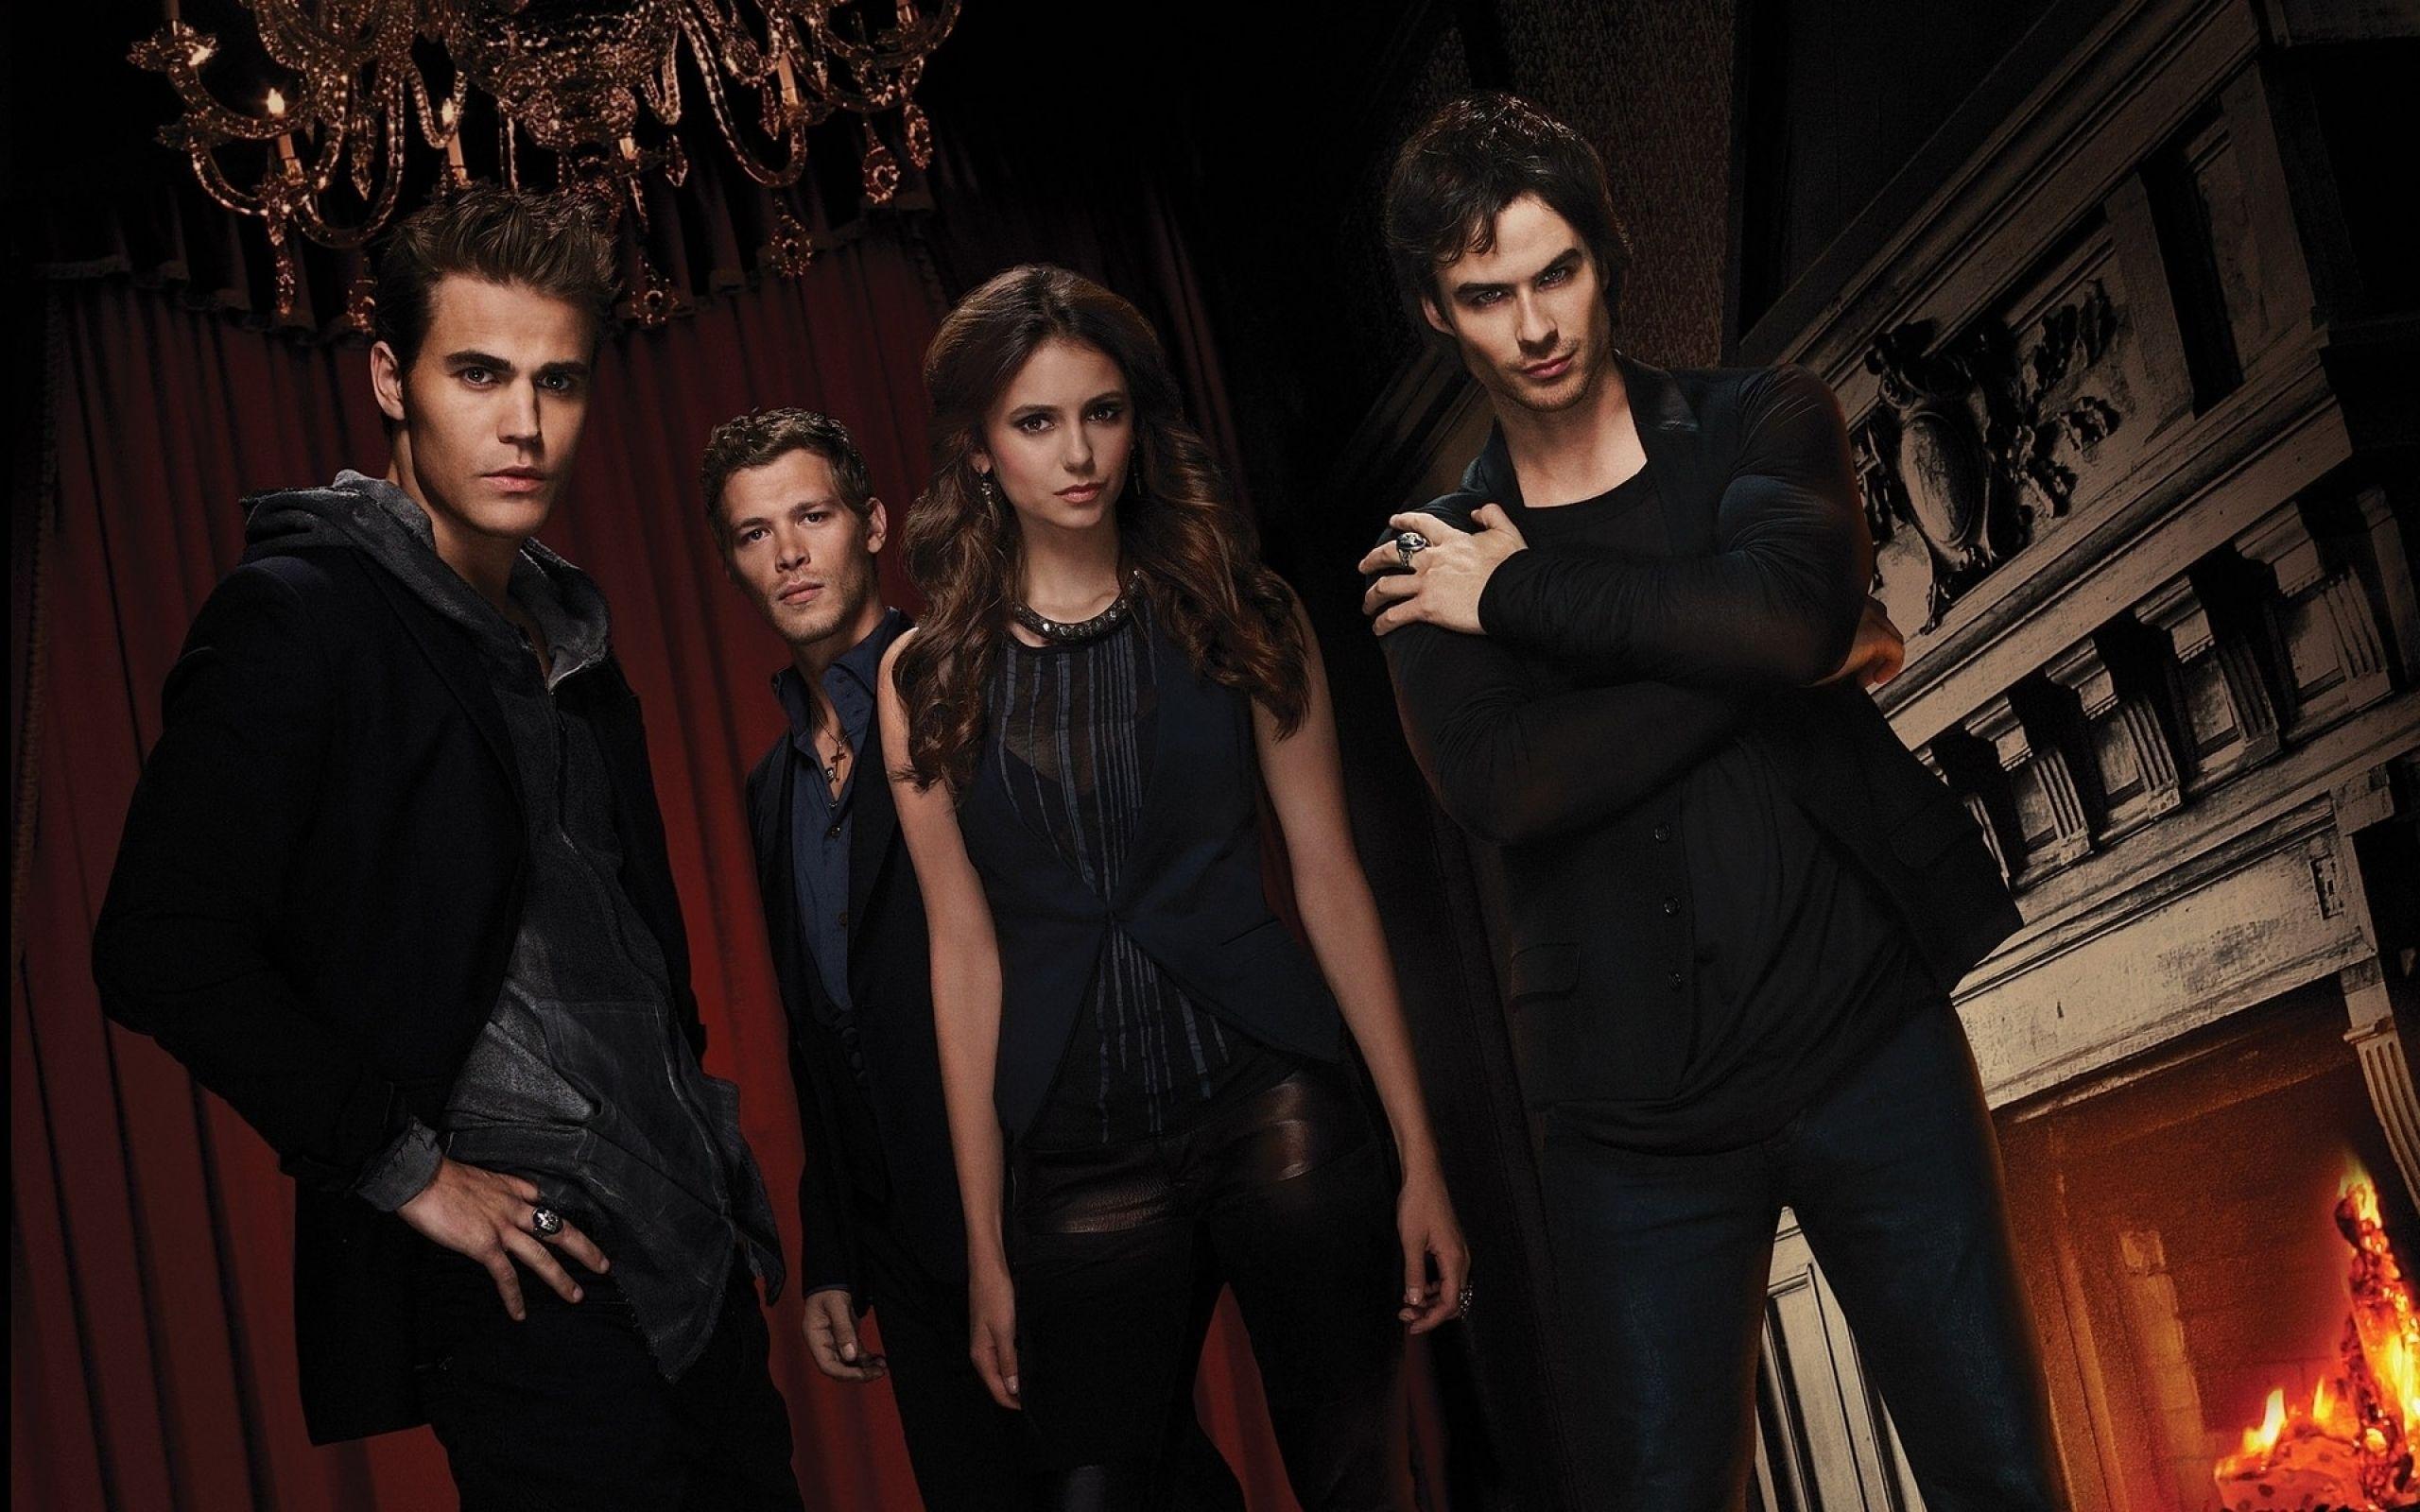 The Vampire Diaries HD Wallpaper